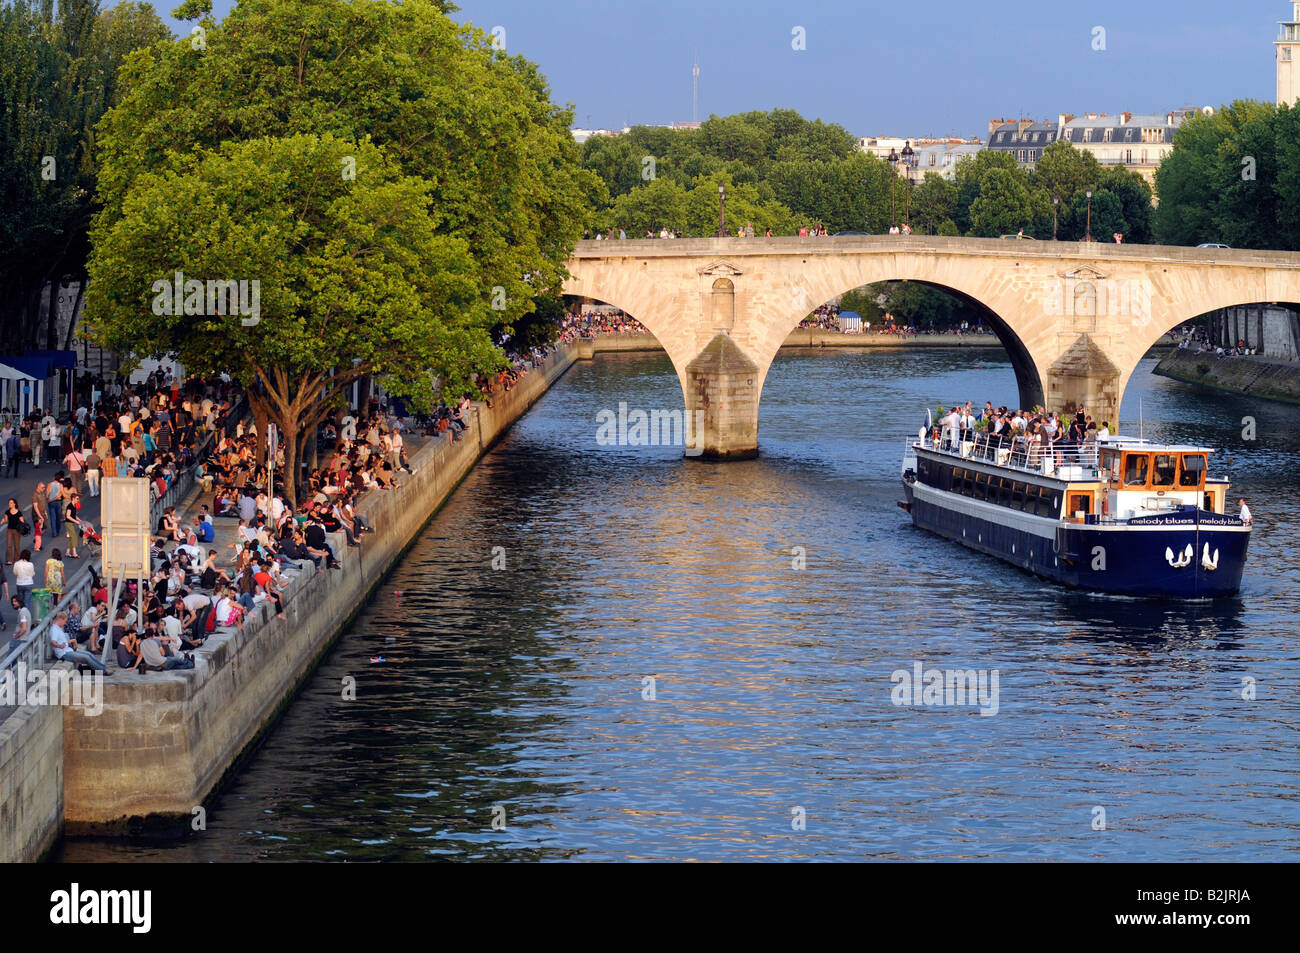 Eine Fliege Boot unter einer Brücke im Zentrum von Paris, während Massen ein Sommerkonzert am Quai der Seine teilnehmen; Frankreich. Stockfoto